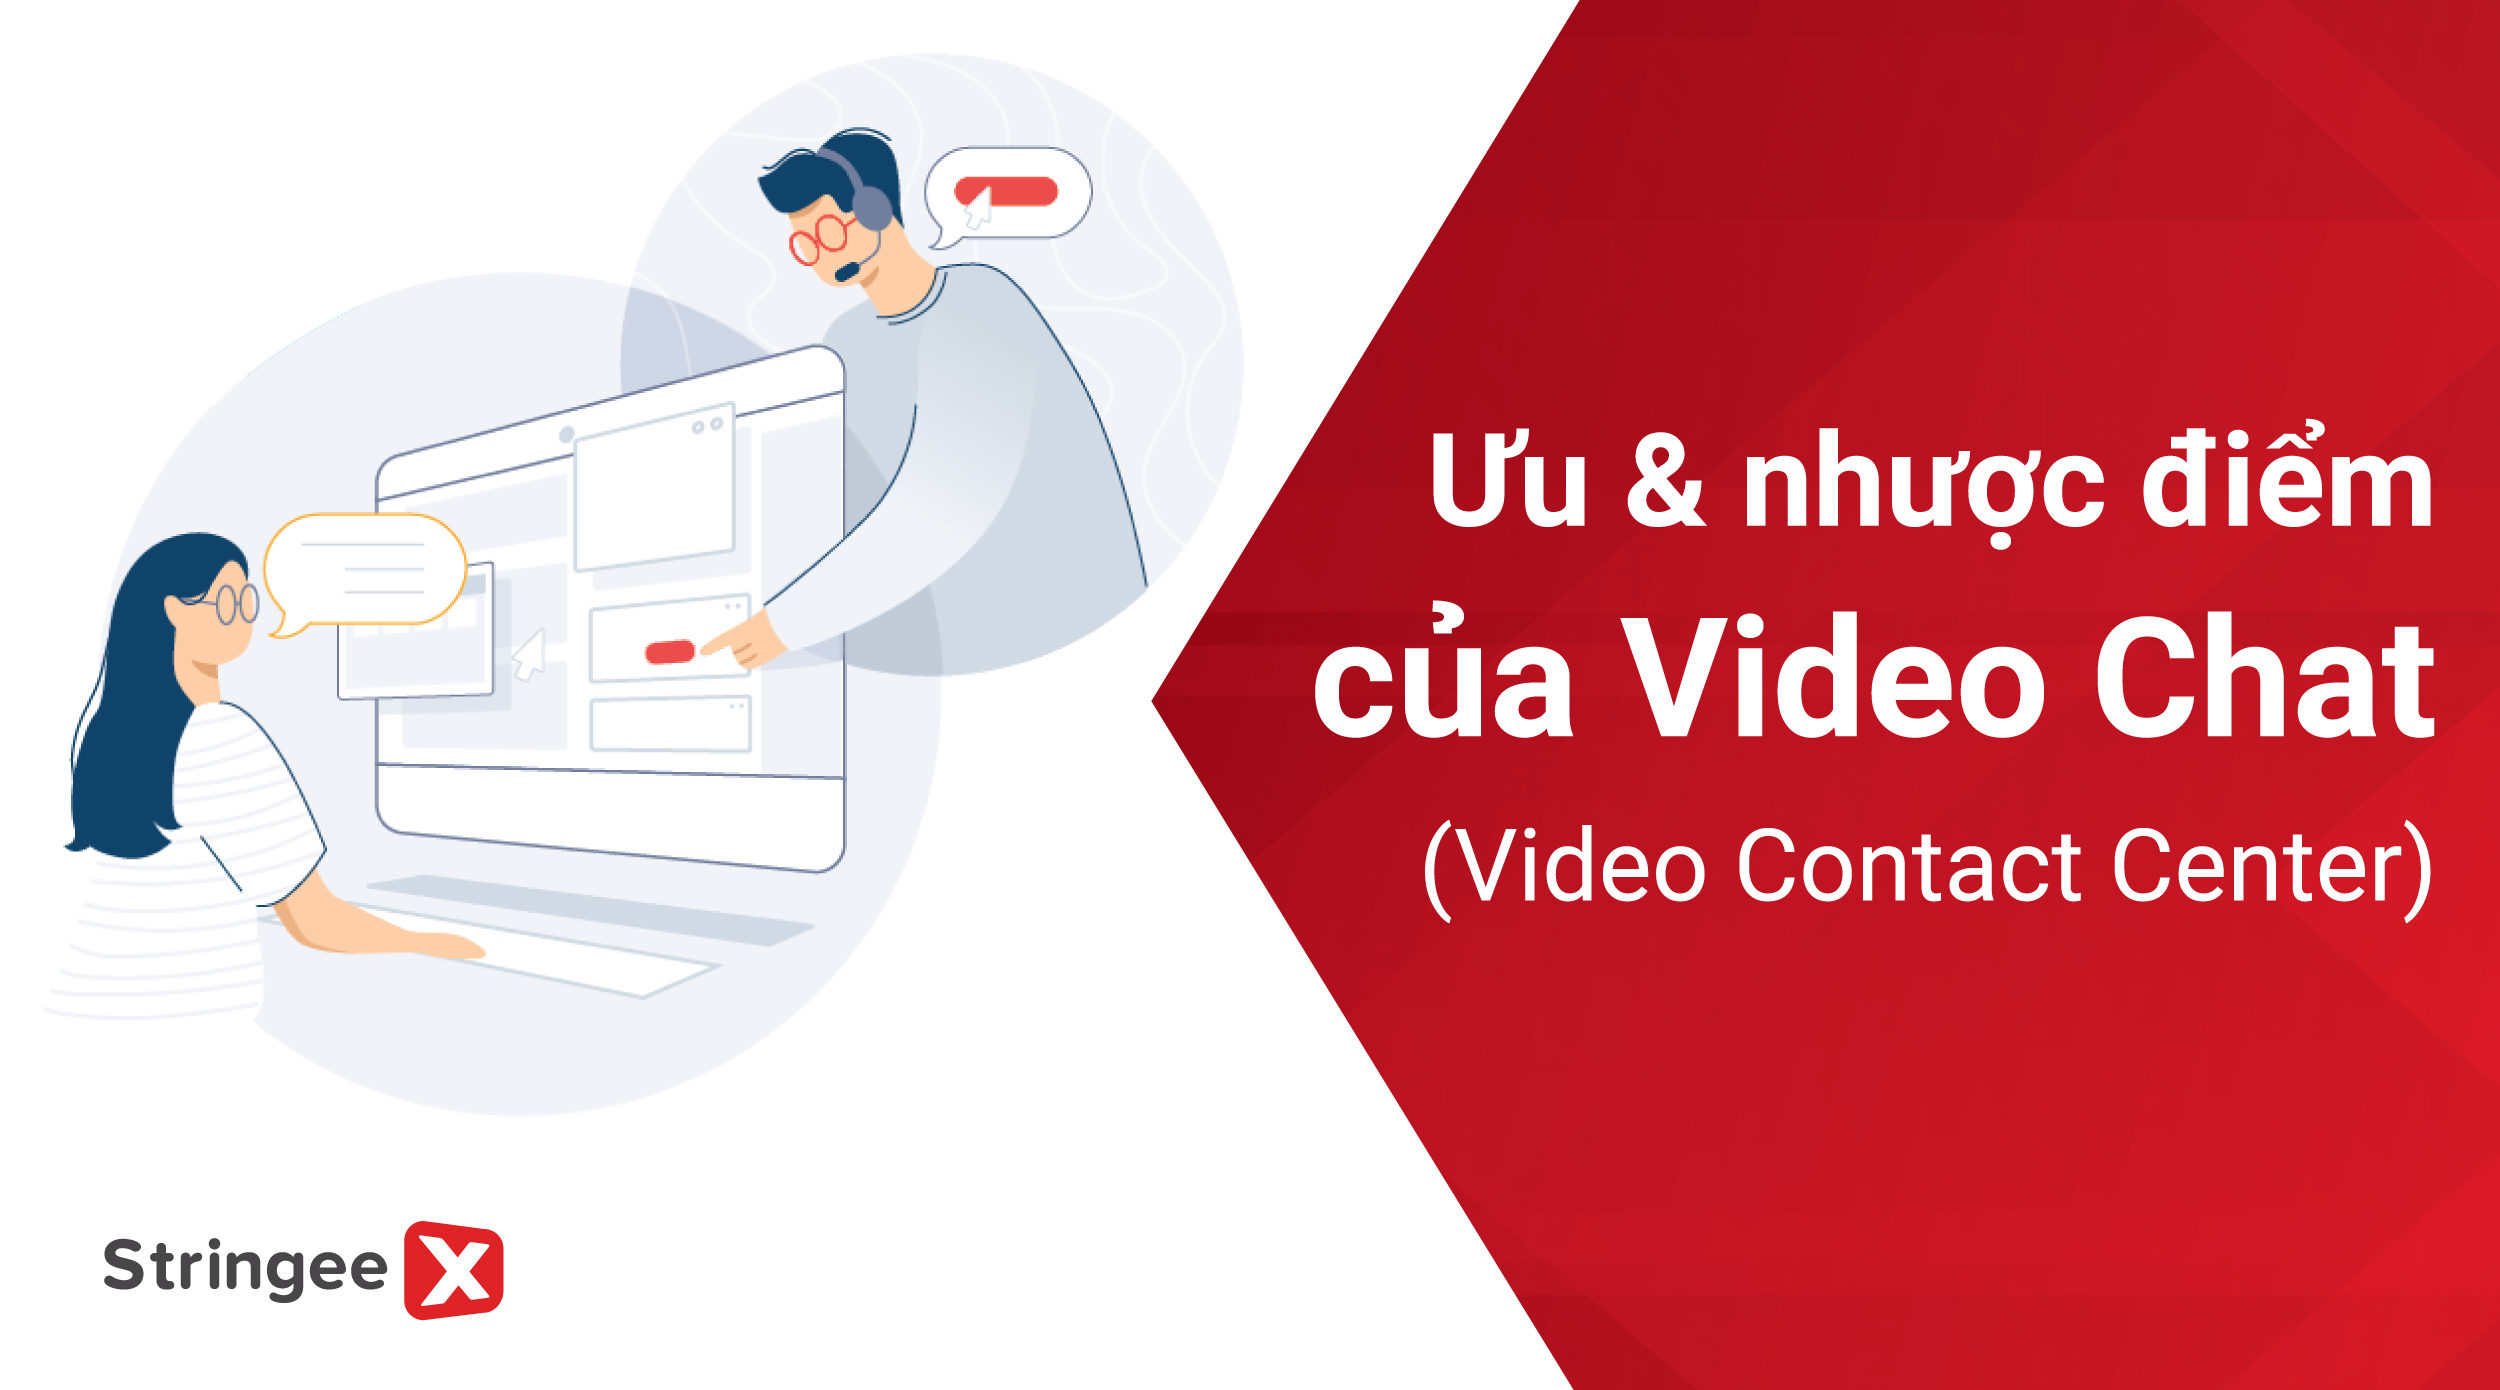 Ưu và nhược điểm của Video Contact Center là gì?